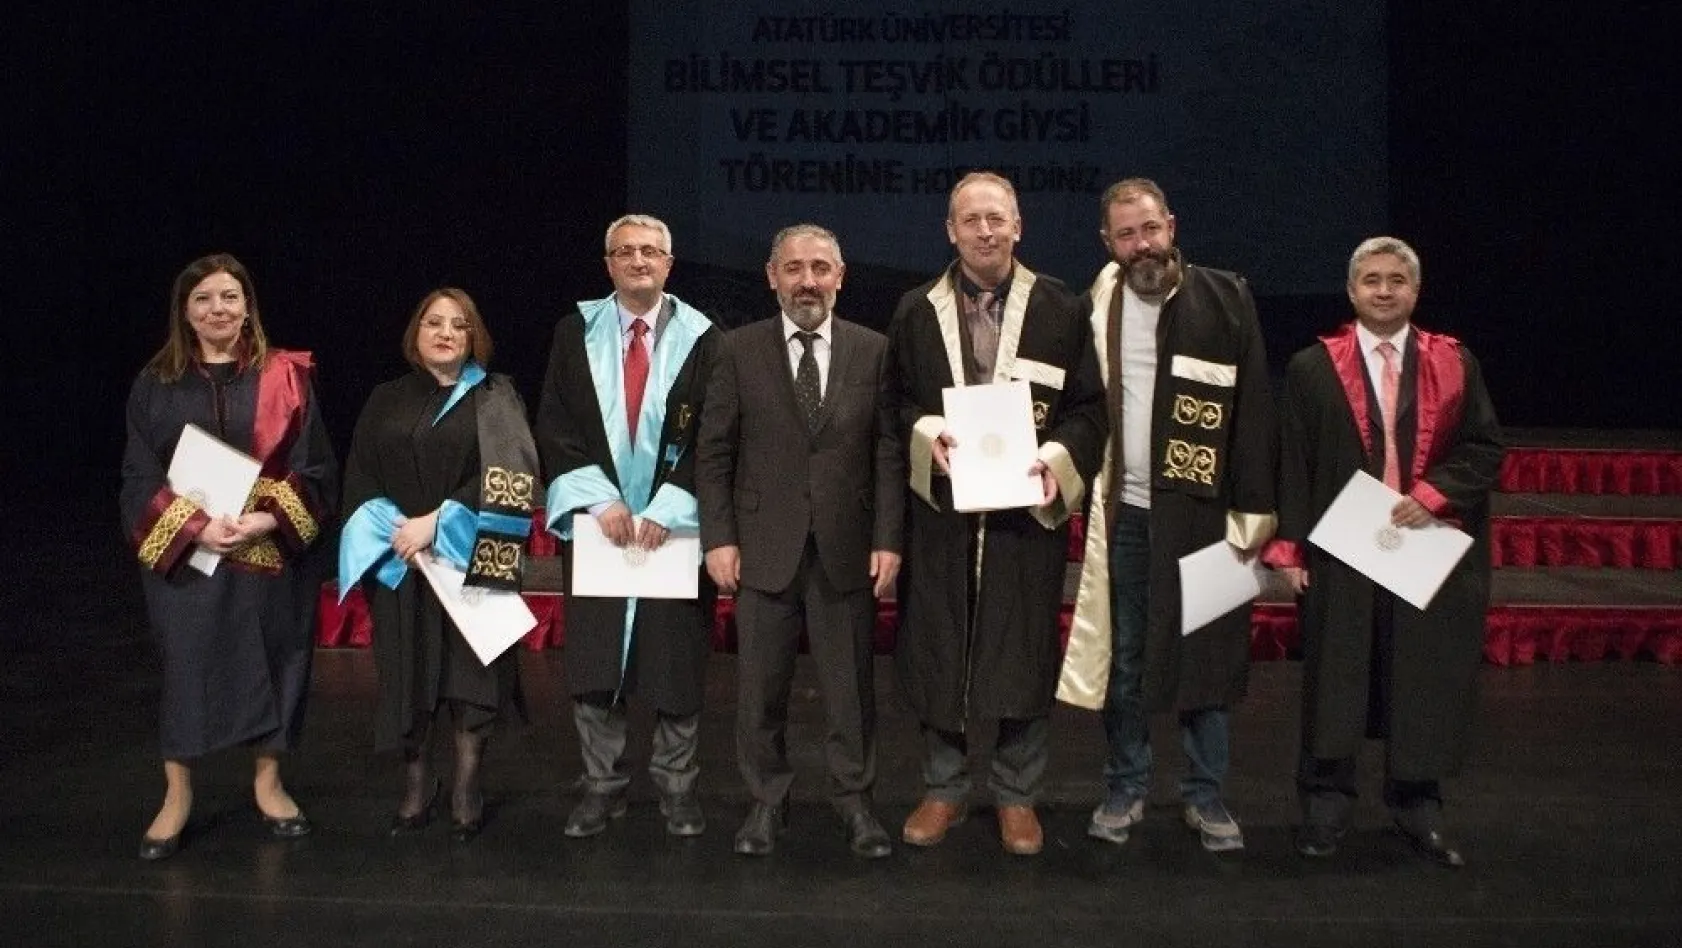 Atatürk Üniversitesi Bilimsel Teşvik Ödülleri ve Akademik Giysi Töreni gerçekleşti
